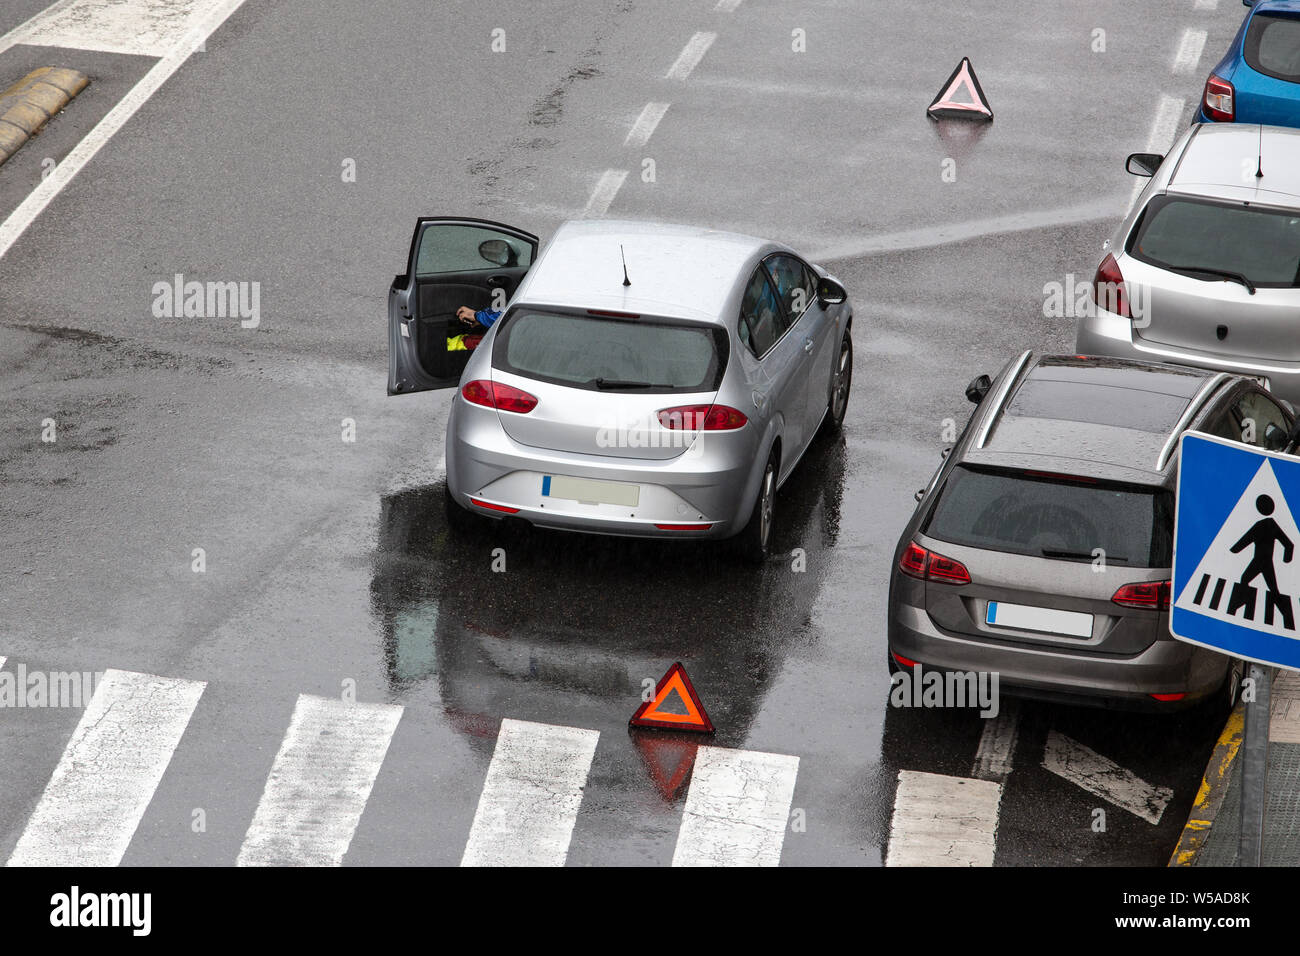 Scène d'une voiture en panne sur une route près de la rue de la ville avec un tableau de concordance et un triangle rouge pour avertir les autres usagers de la route. Jour de pluie. Copy space Banque D'Images